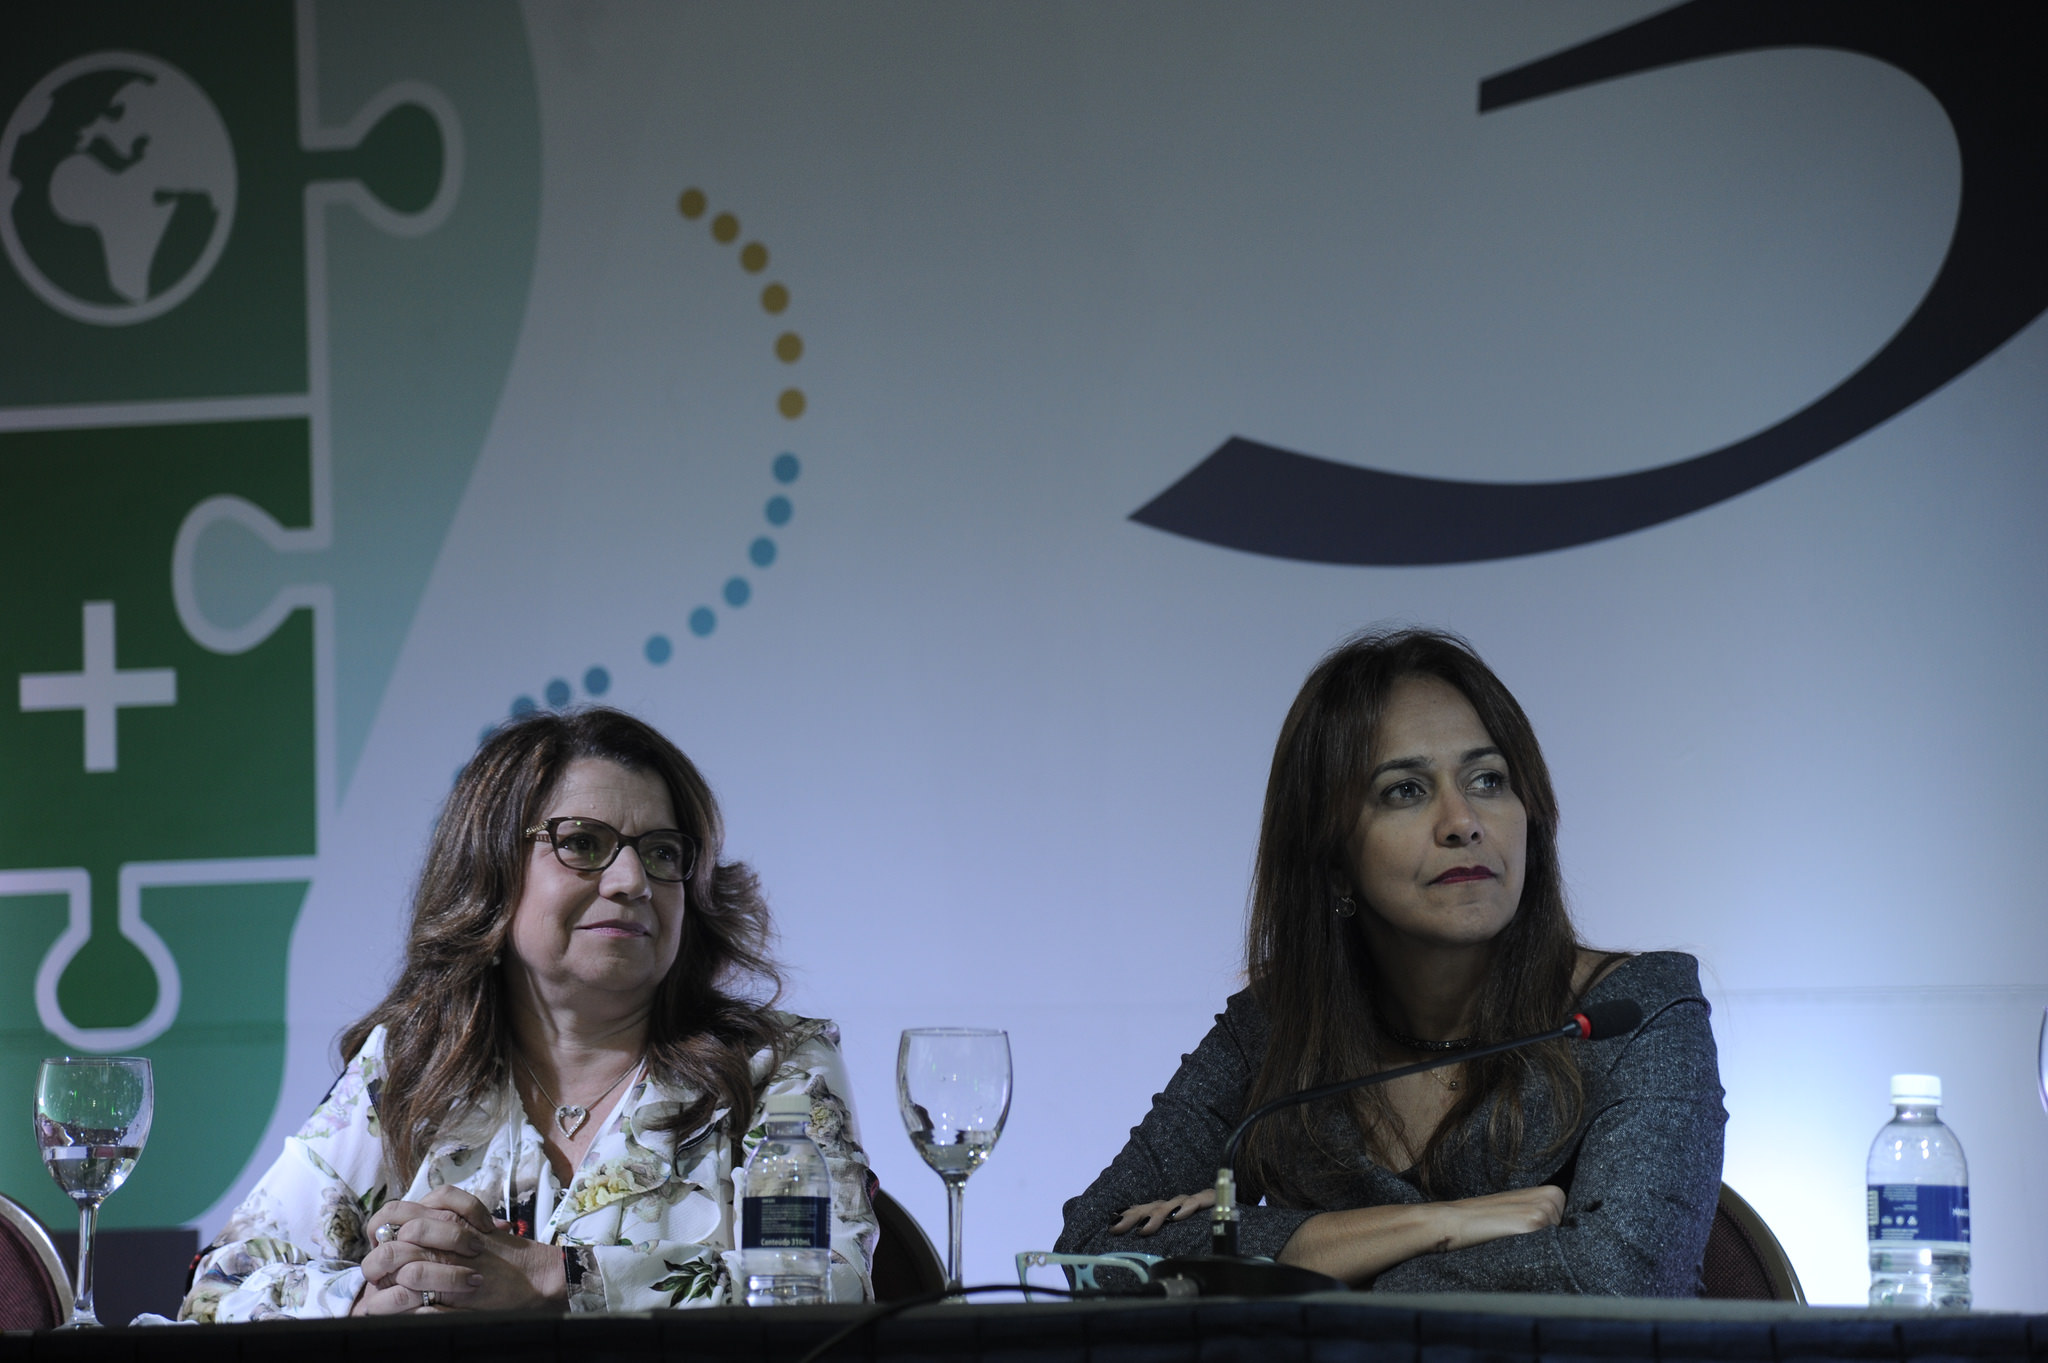 Kátia Guimarães e Rosylane Rocha apresentaram casos de assédio moral contra residentes e estudantes